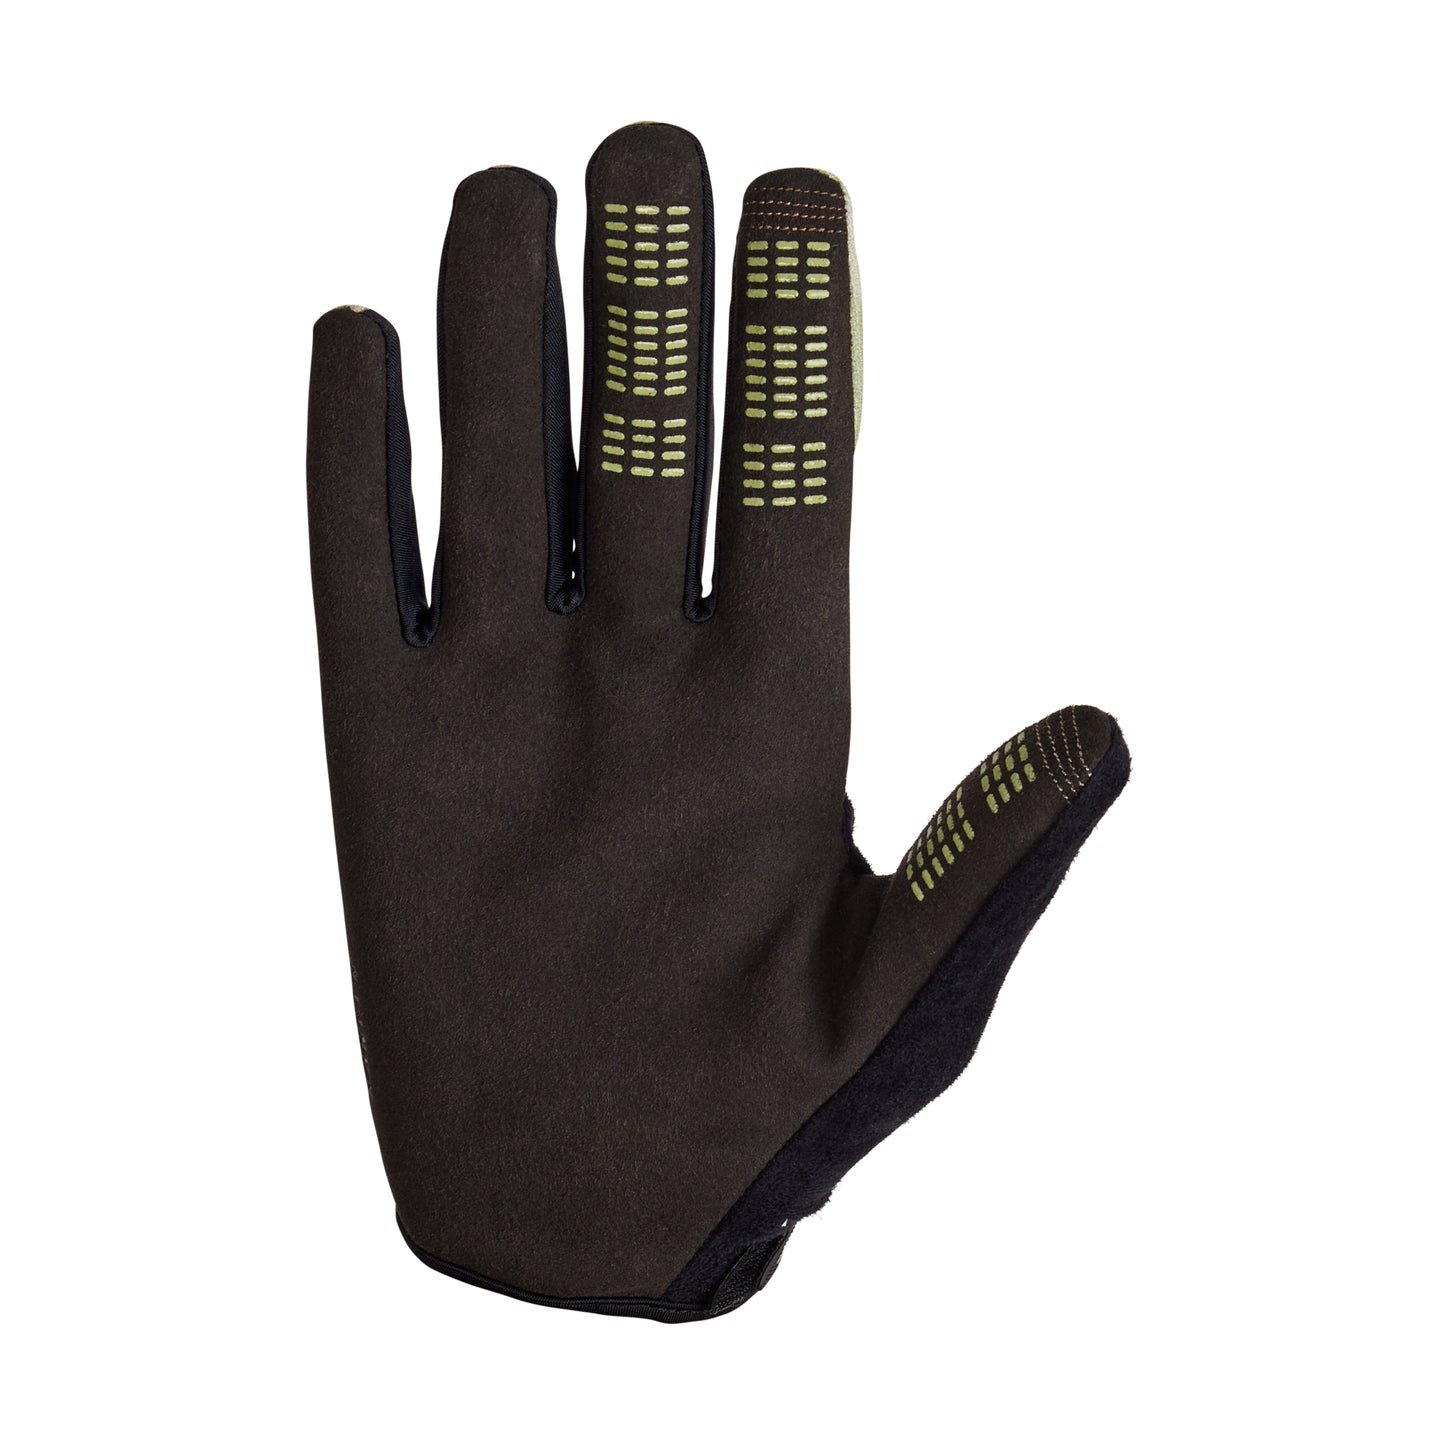 Fox Ranger Full Finger Gloves - L - Graphic - Pale Green - Image 2